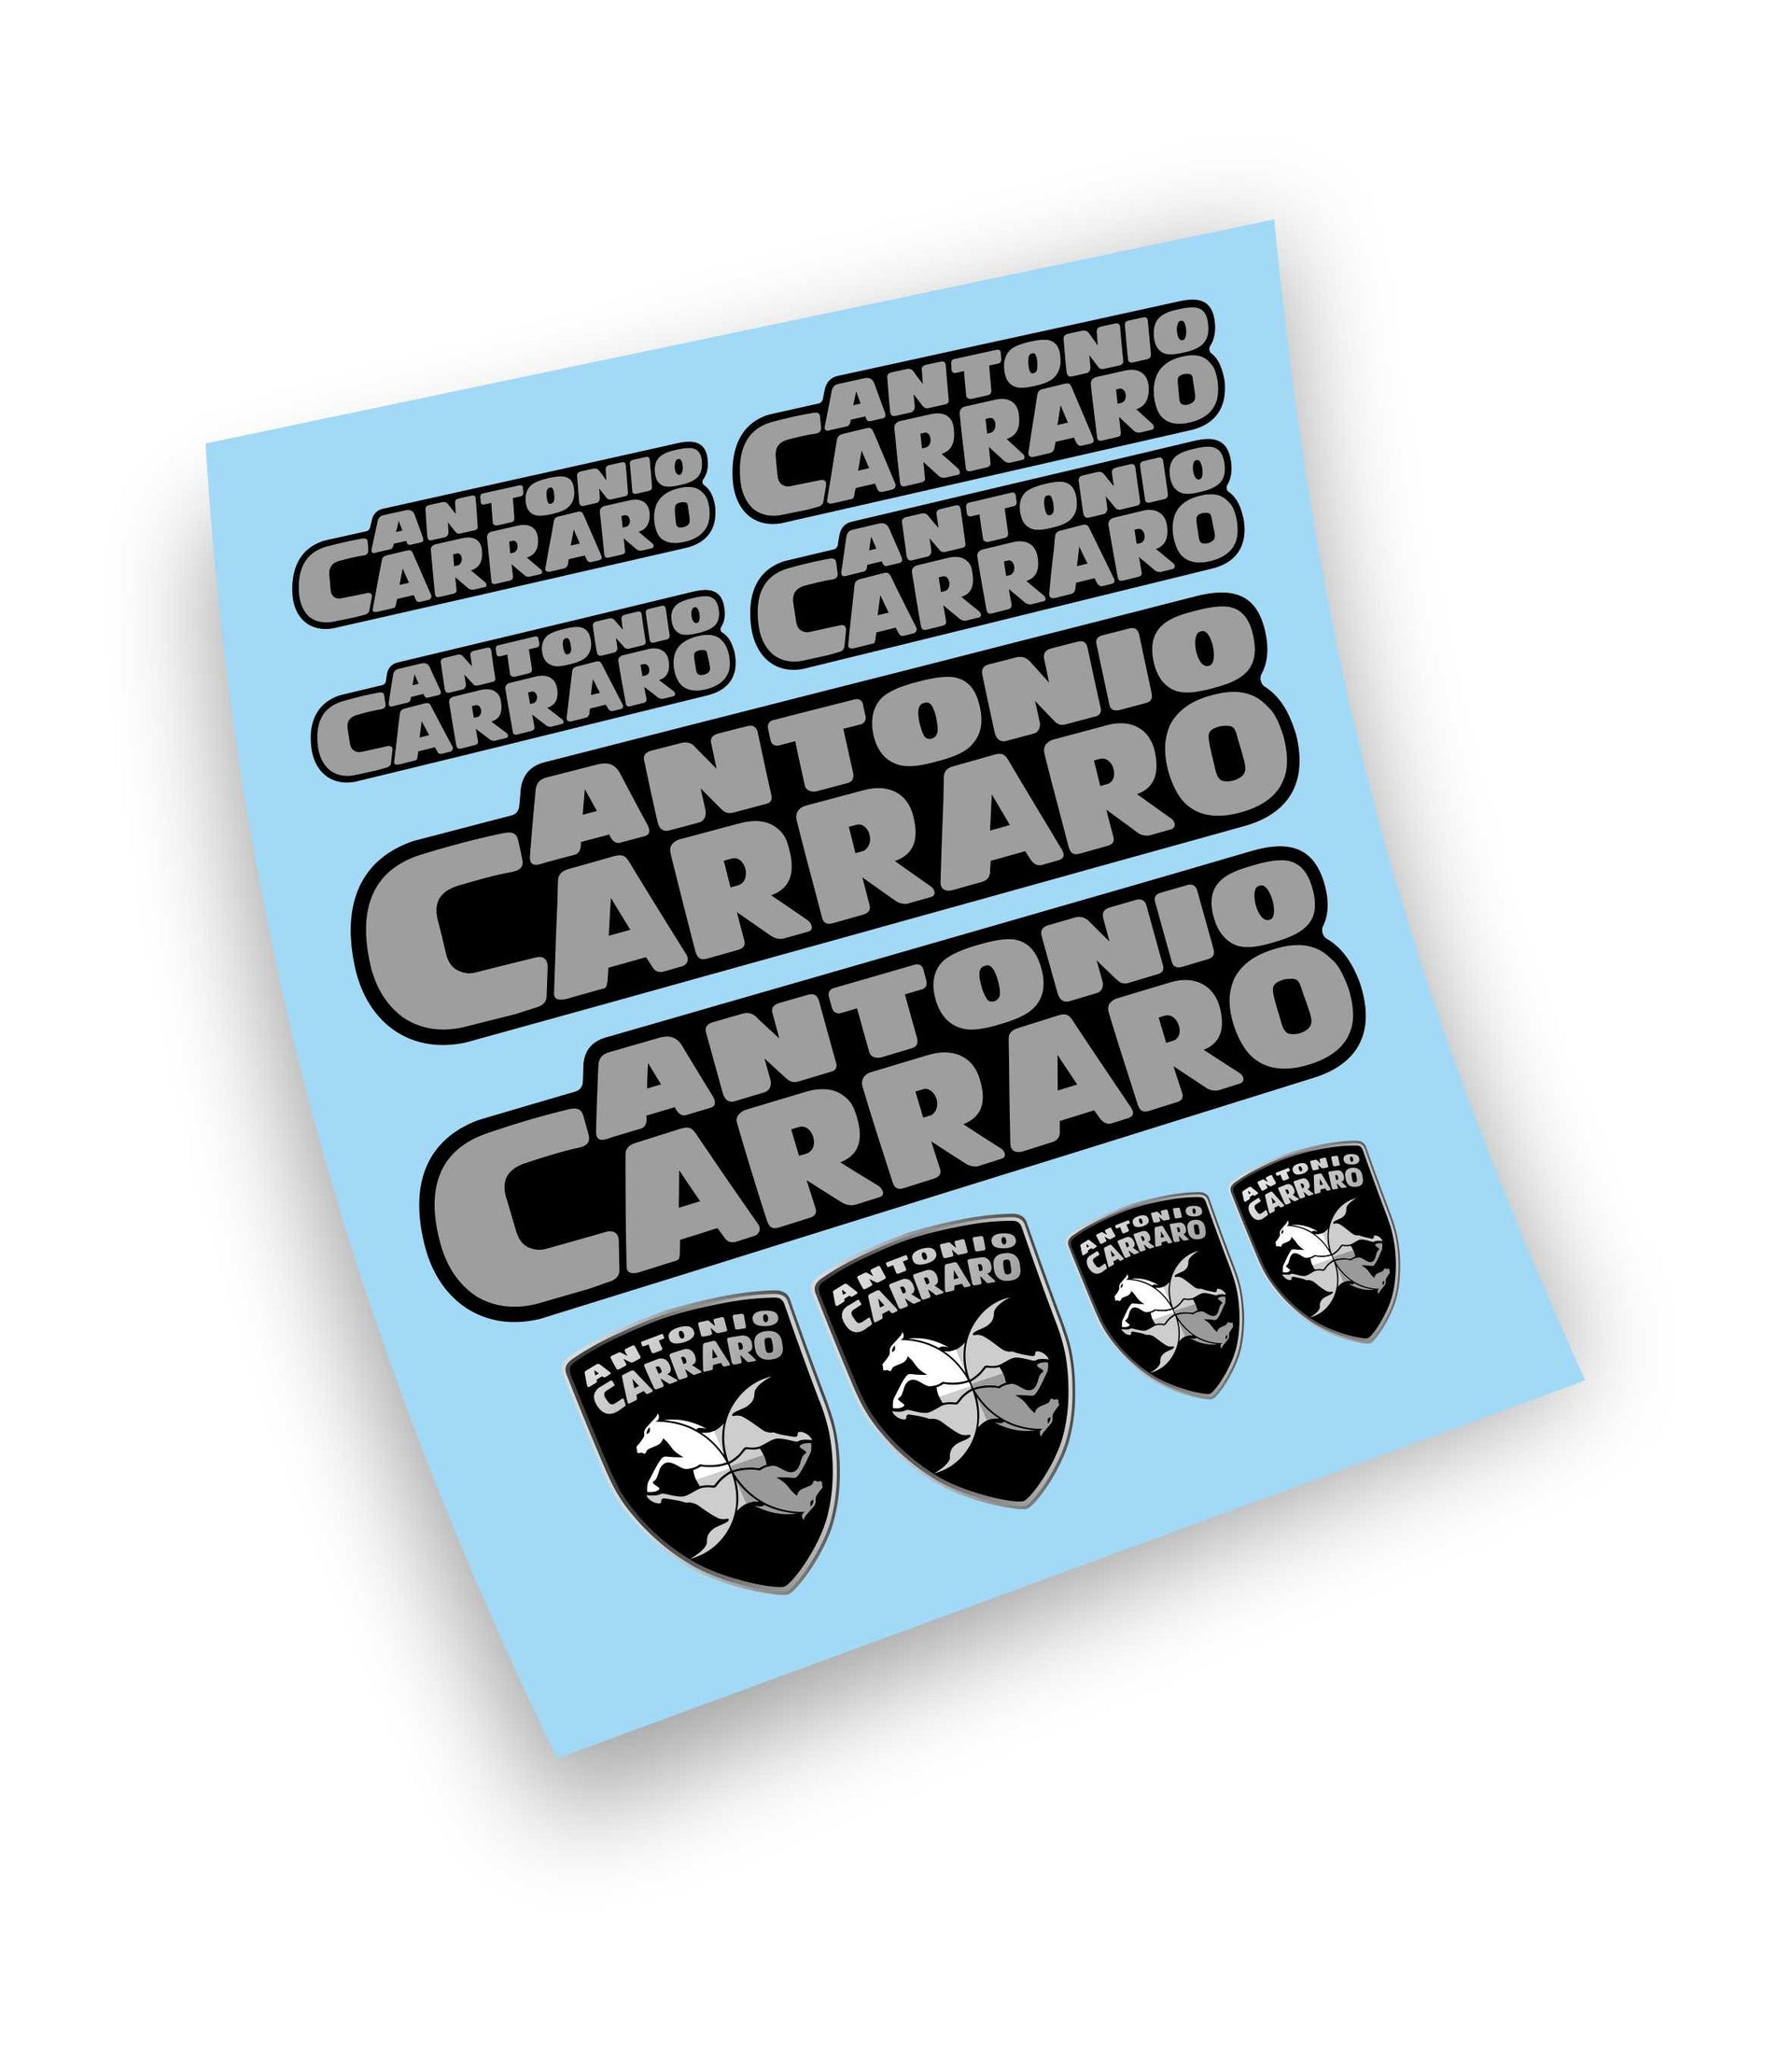 Antonio Carraro kit adesivi sticker per trattore e mezzi agricoli – L' adesivo.com